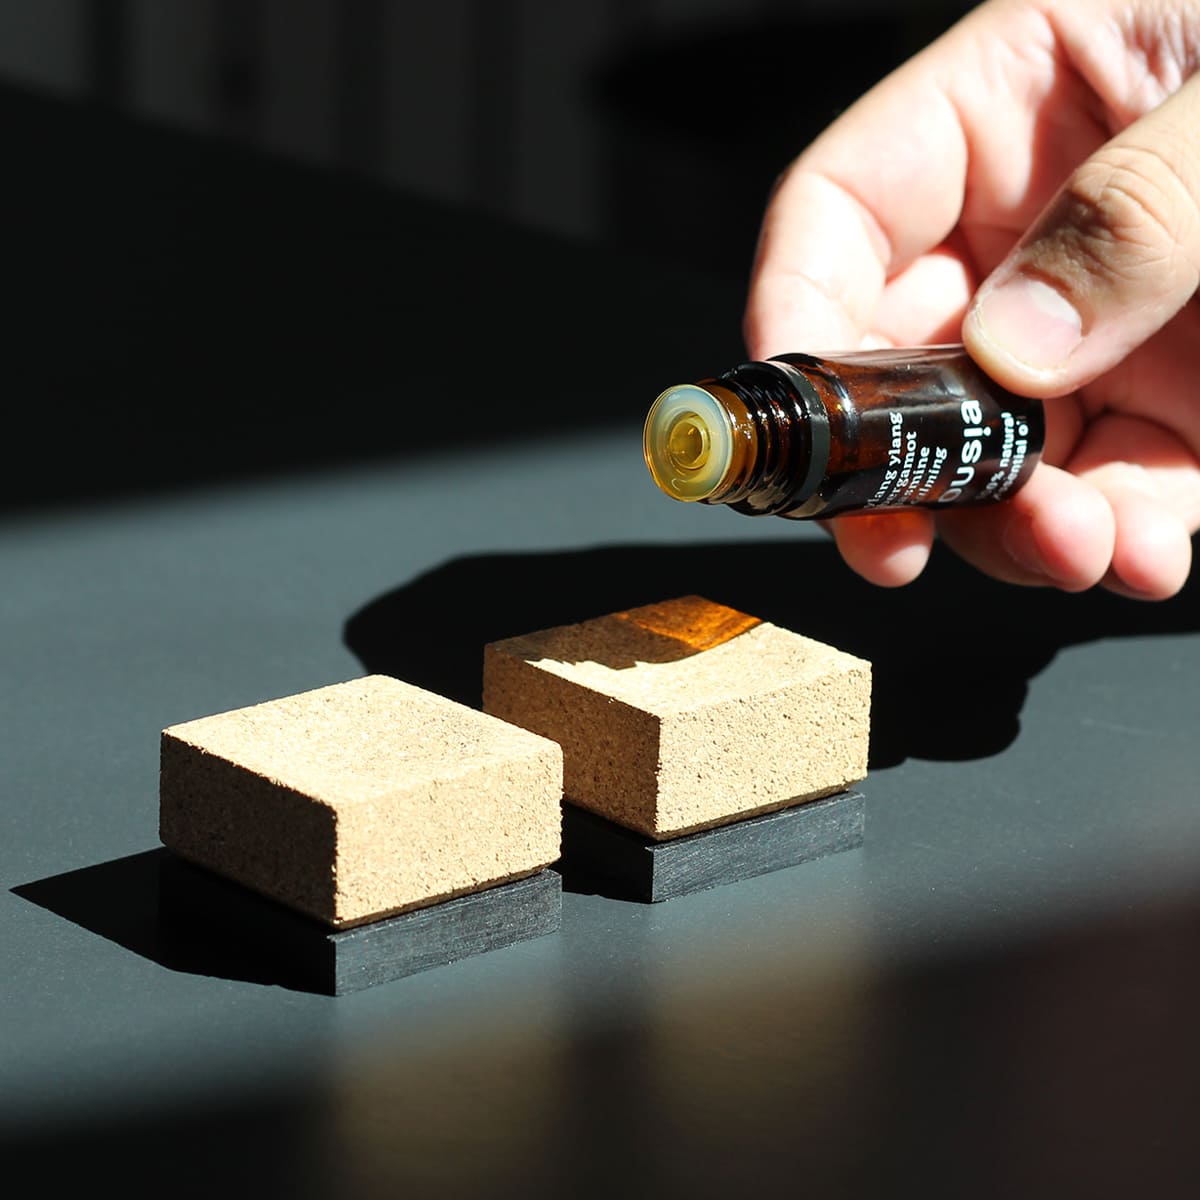 Duftblock-Set Quadrat mit Duftöl „Calming“